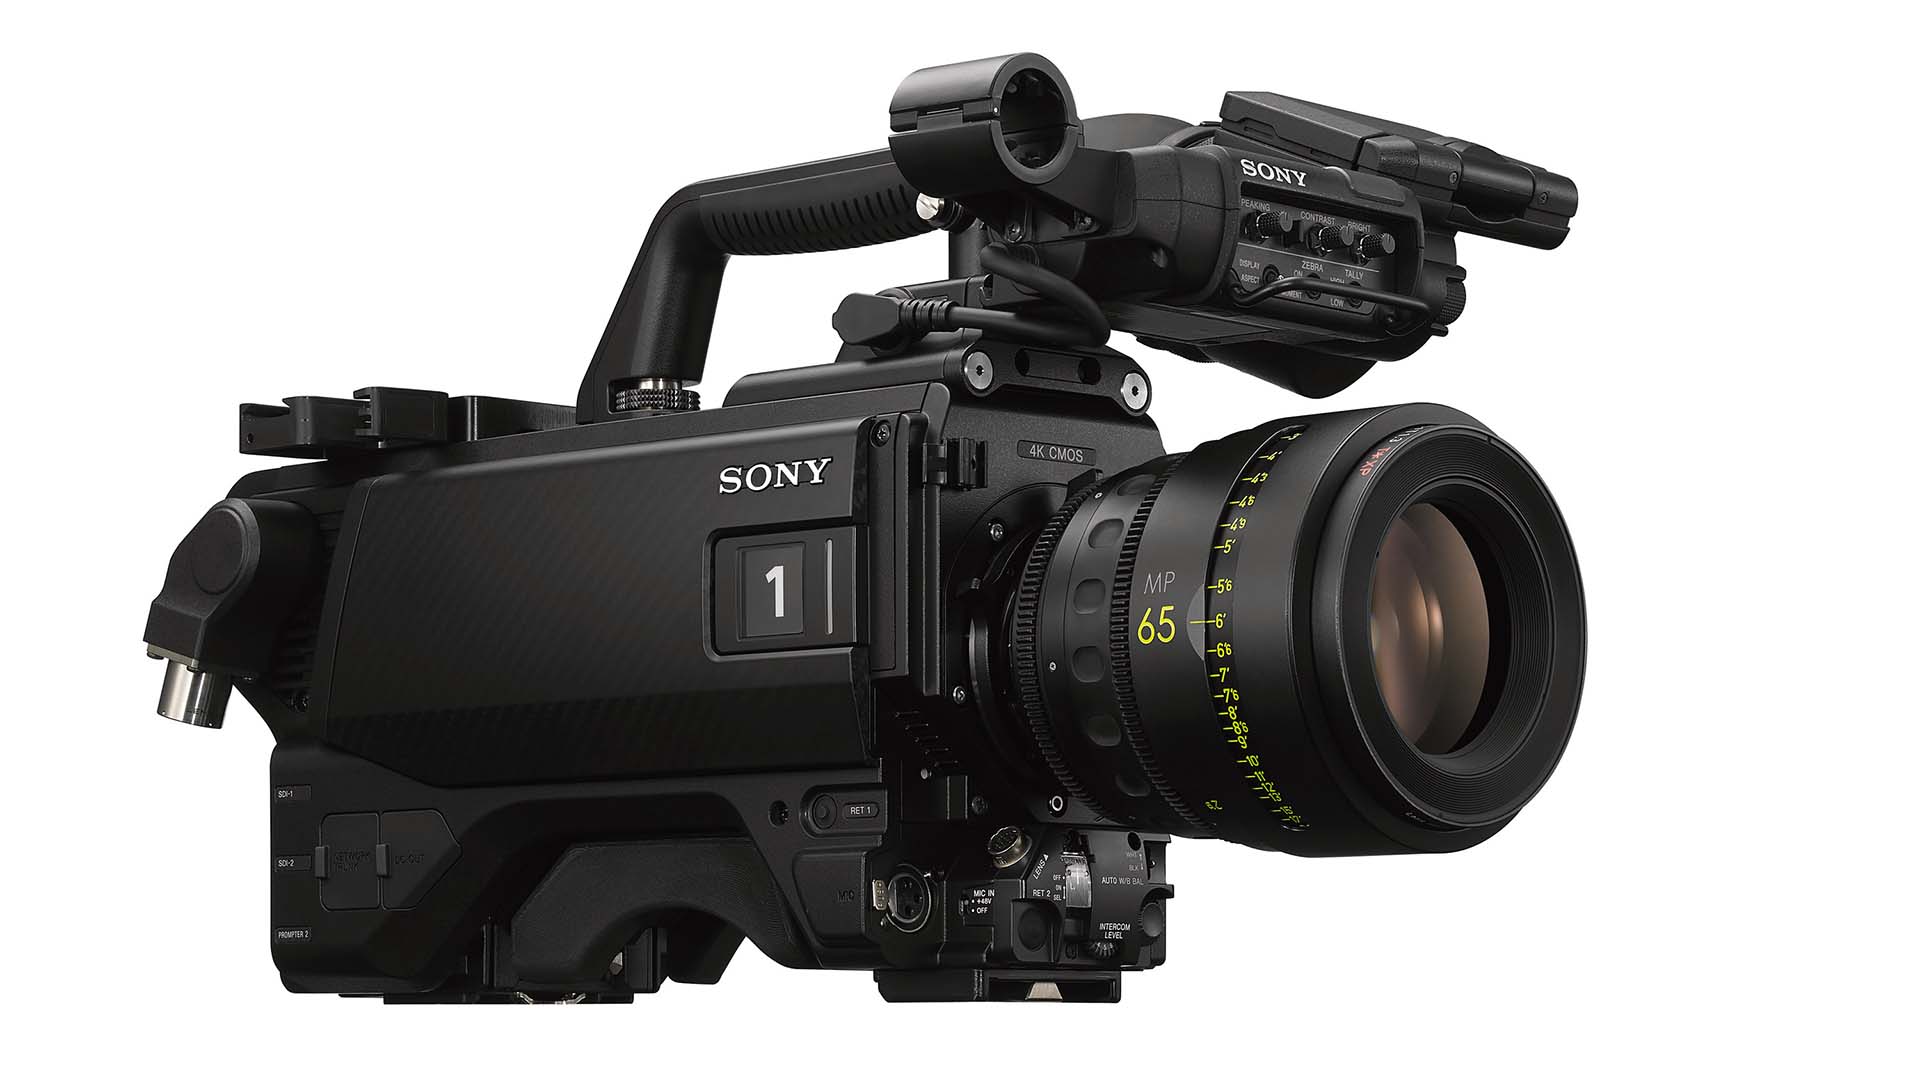 Sony's new HDC-F5500 camera